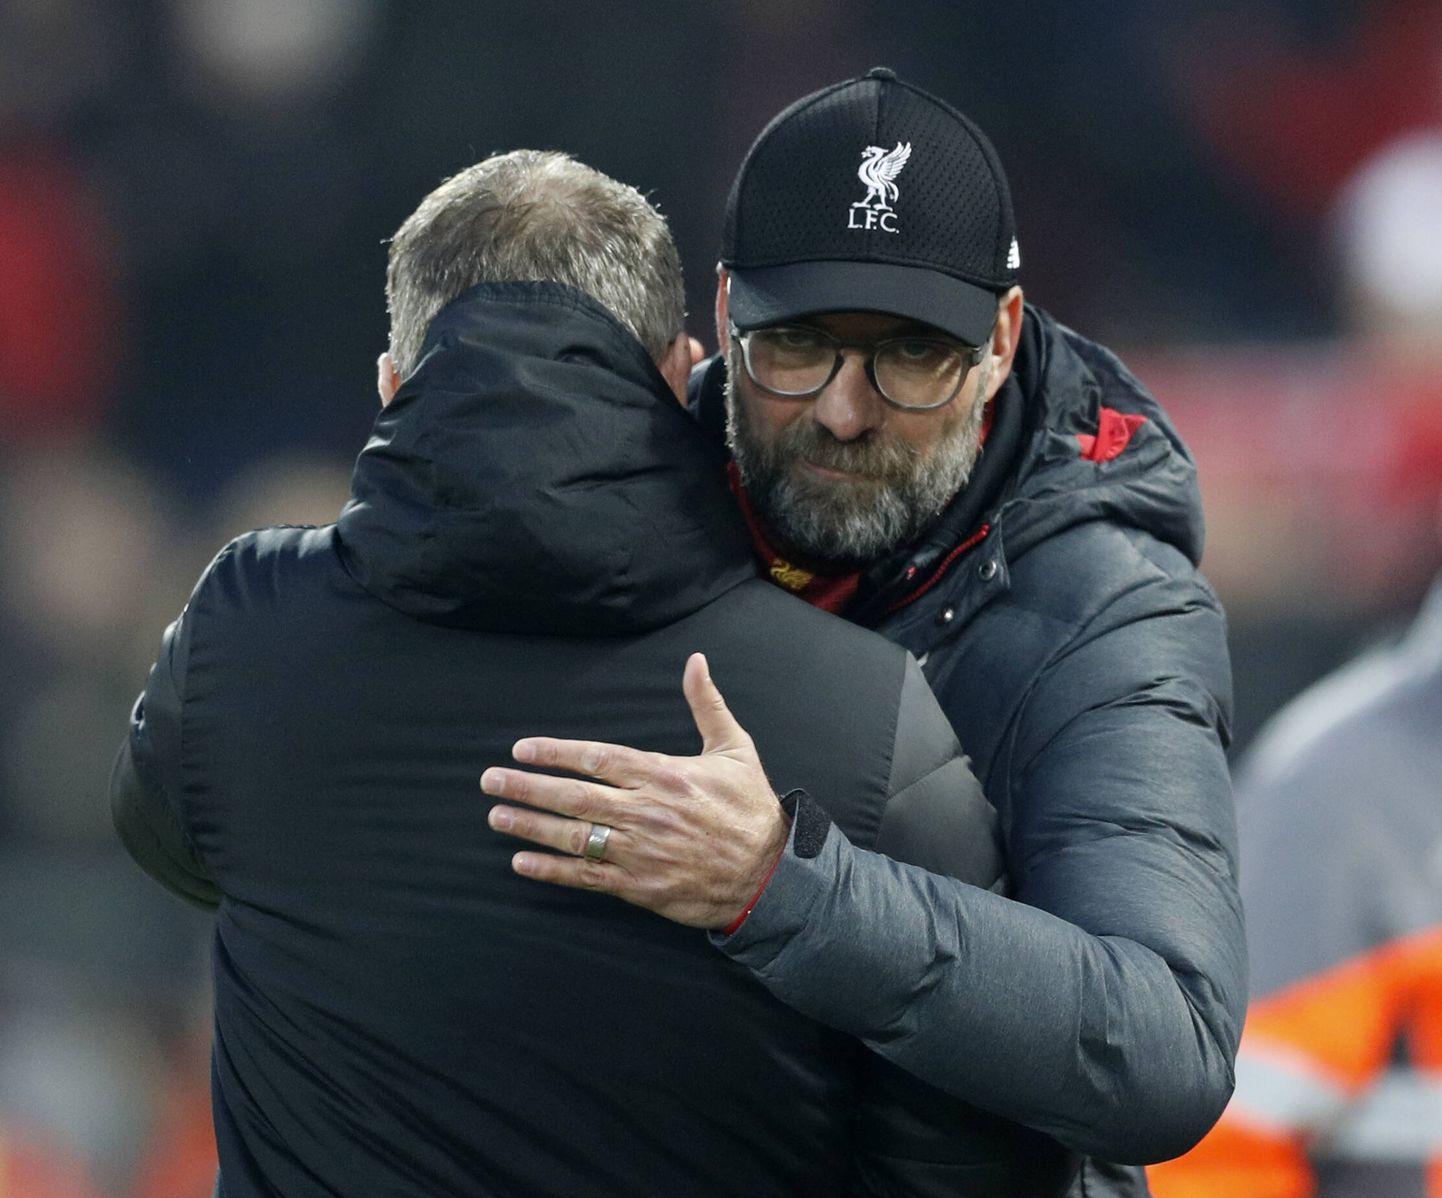 Kui mängud jätkuvad, ei tohi Liverpooli peatreener Jürgen Klopp (näoga) enam tervet väljakutäit inimesi läbi kallistada - nagu ta sel pildil embab oma Manchester Unitedi kolleegi Ole Gunnar Solskjäri.